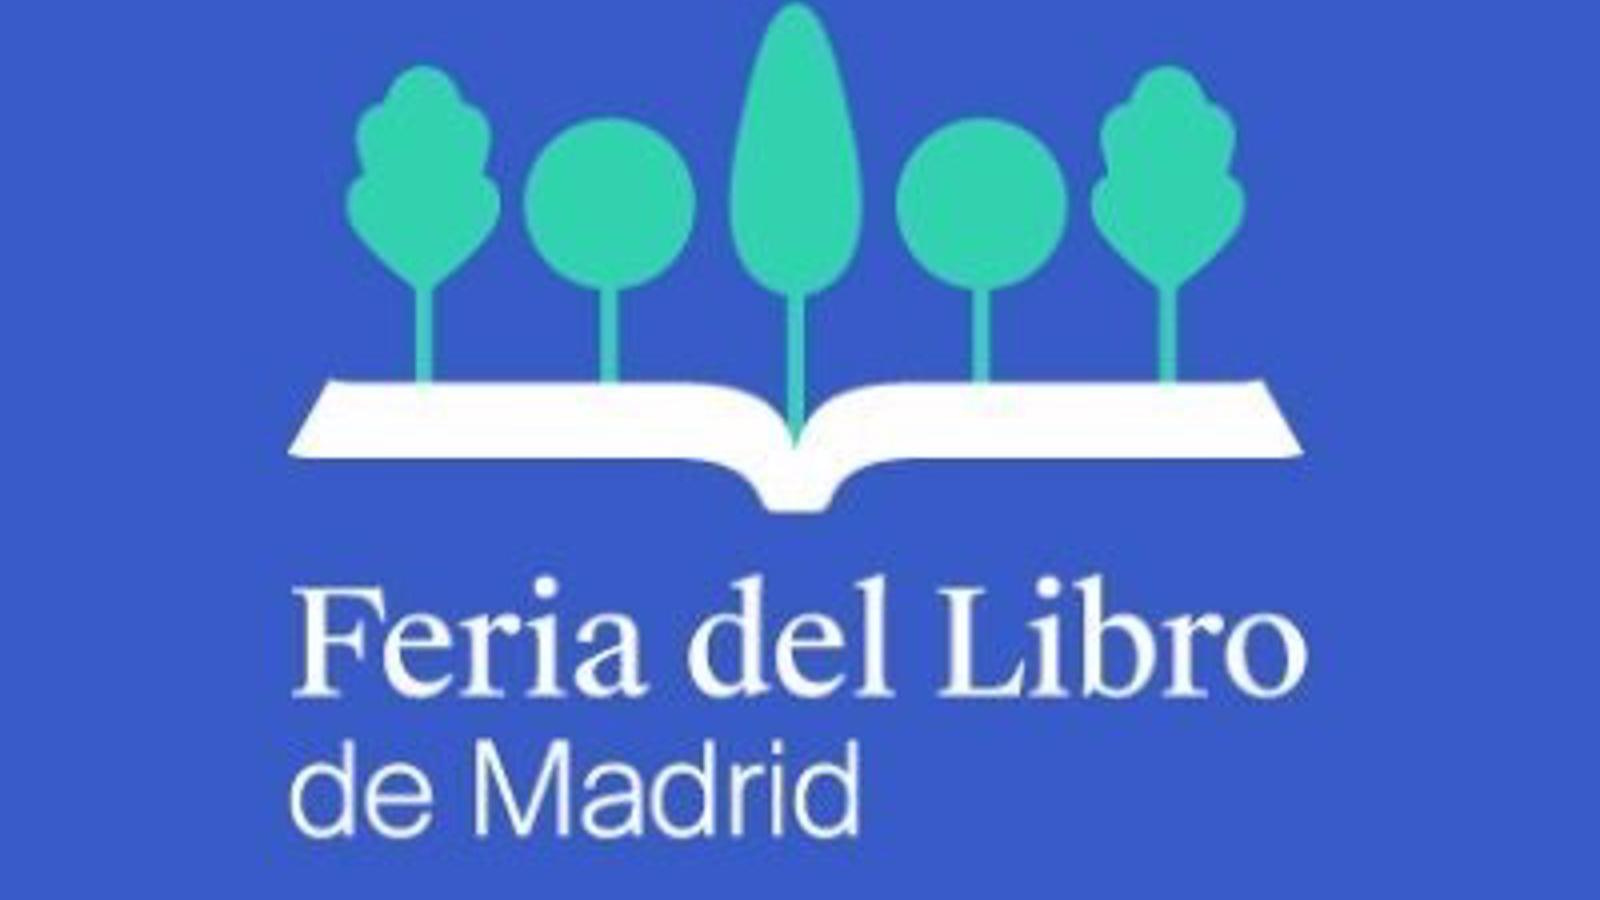 La Feria del Libro de Madrid estrena imagen con un logo en homenaje a El Retiro coincidiendo con su 90 cumpleaños